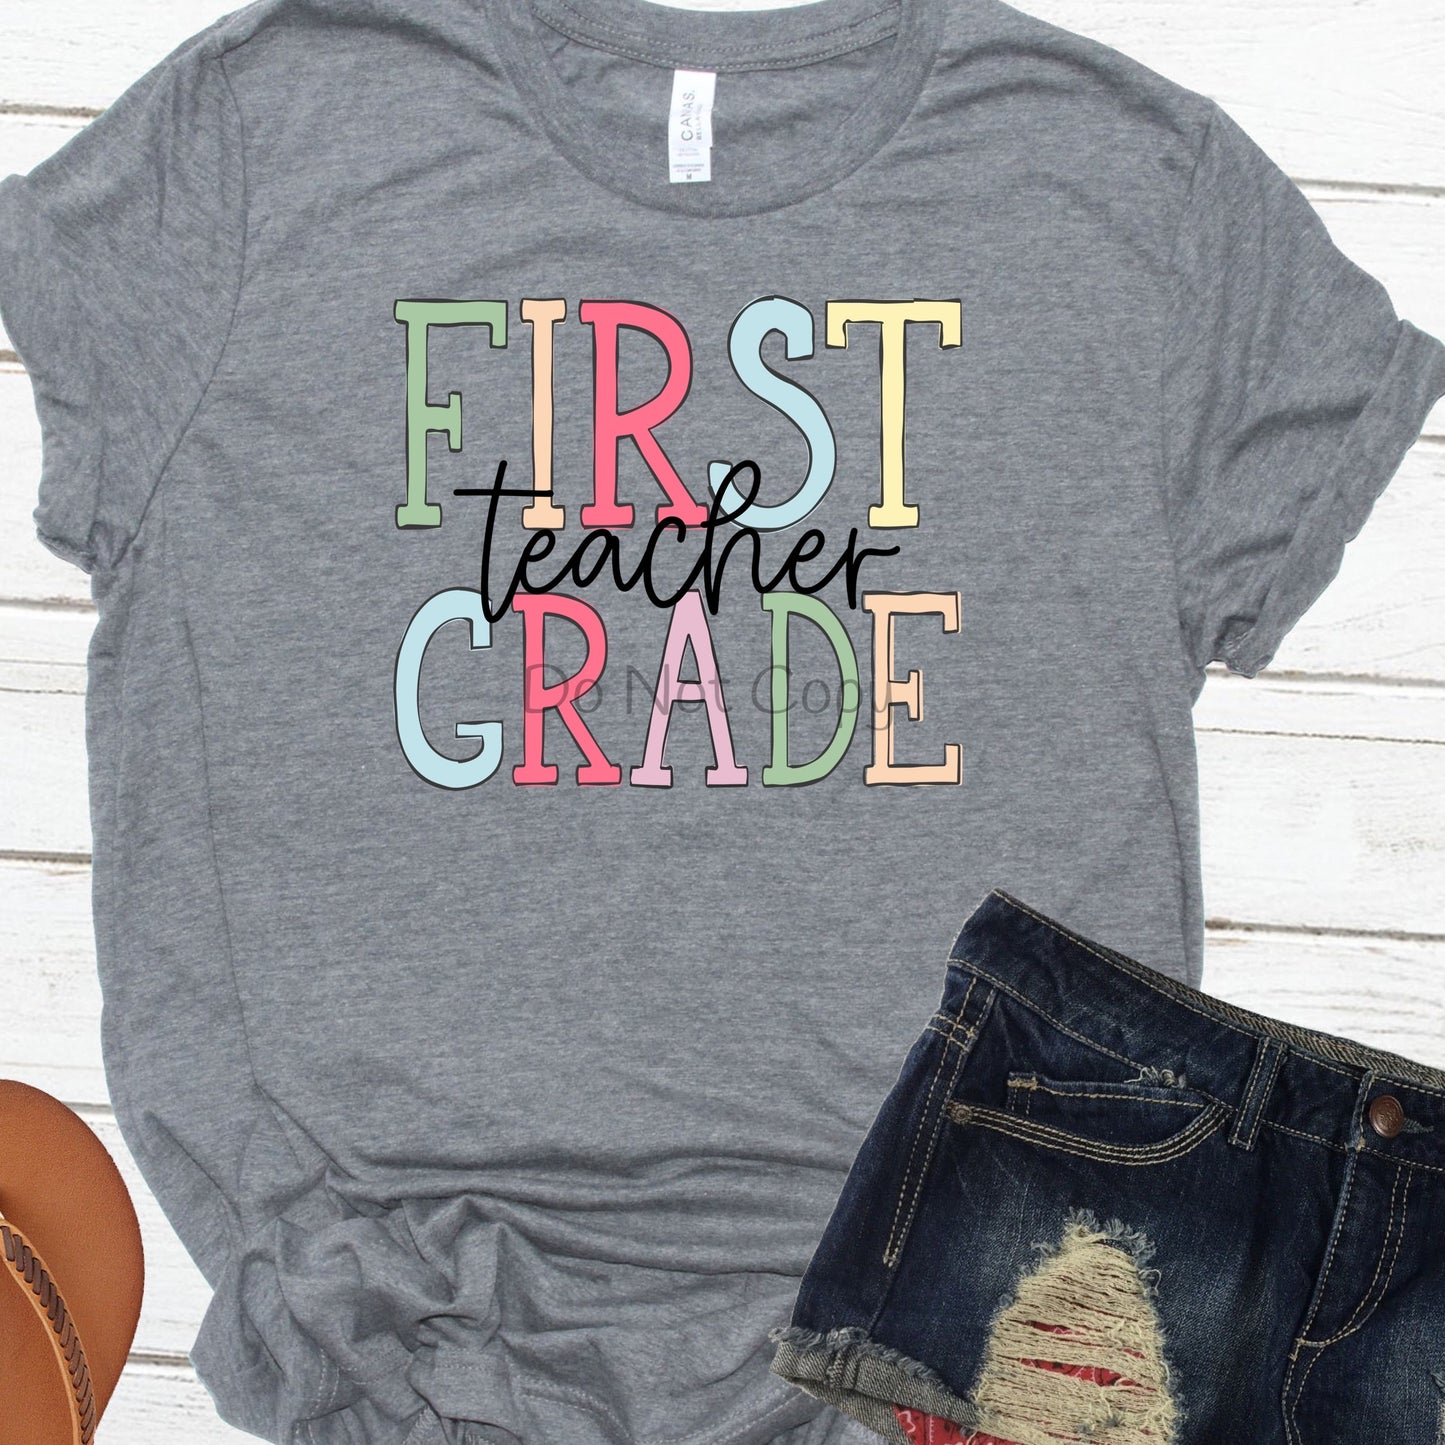 First grade teacher-DTF